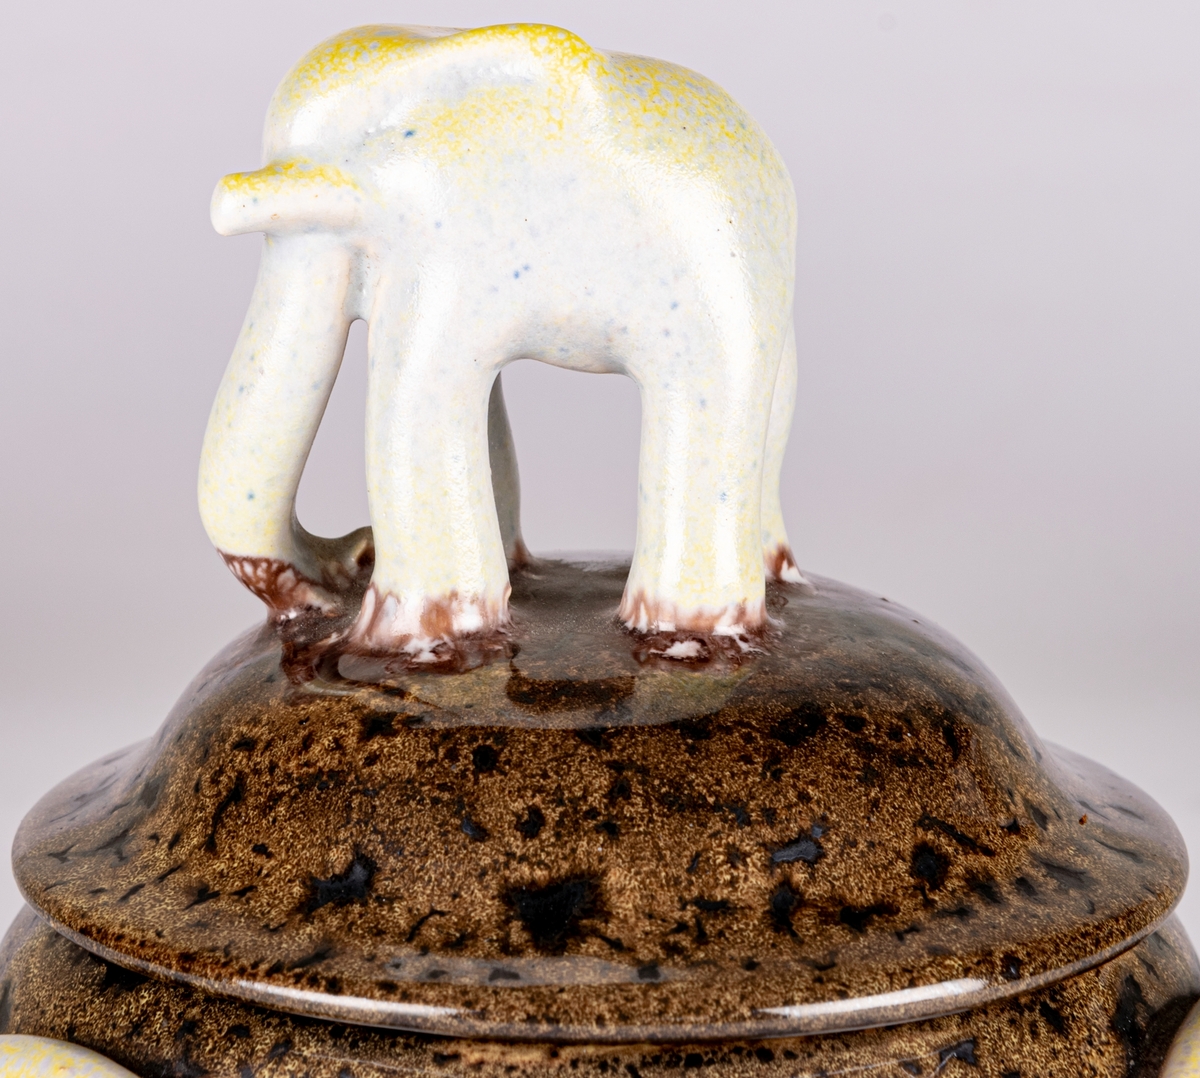 Bonbonjär, konfektskål med lock, formgiven av Allan Ebeling. Brunspräcklig glasyr, tre dekorationsöron på sidorna i en gulskimrande glasyr, locket kröns av en modellerad elefant i en gråblå och gulskimrande glasyr.